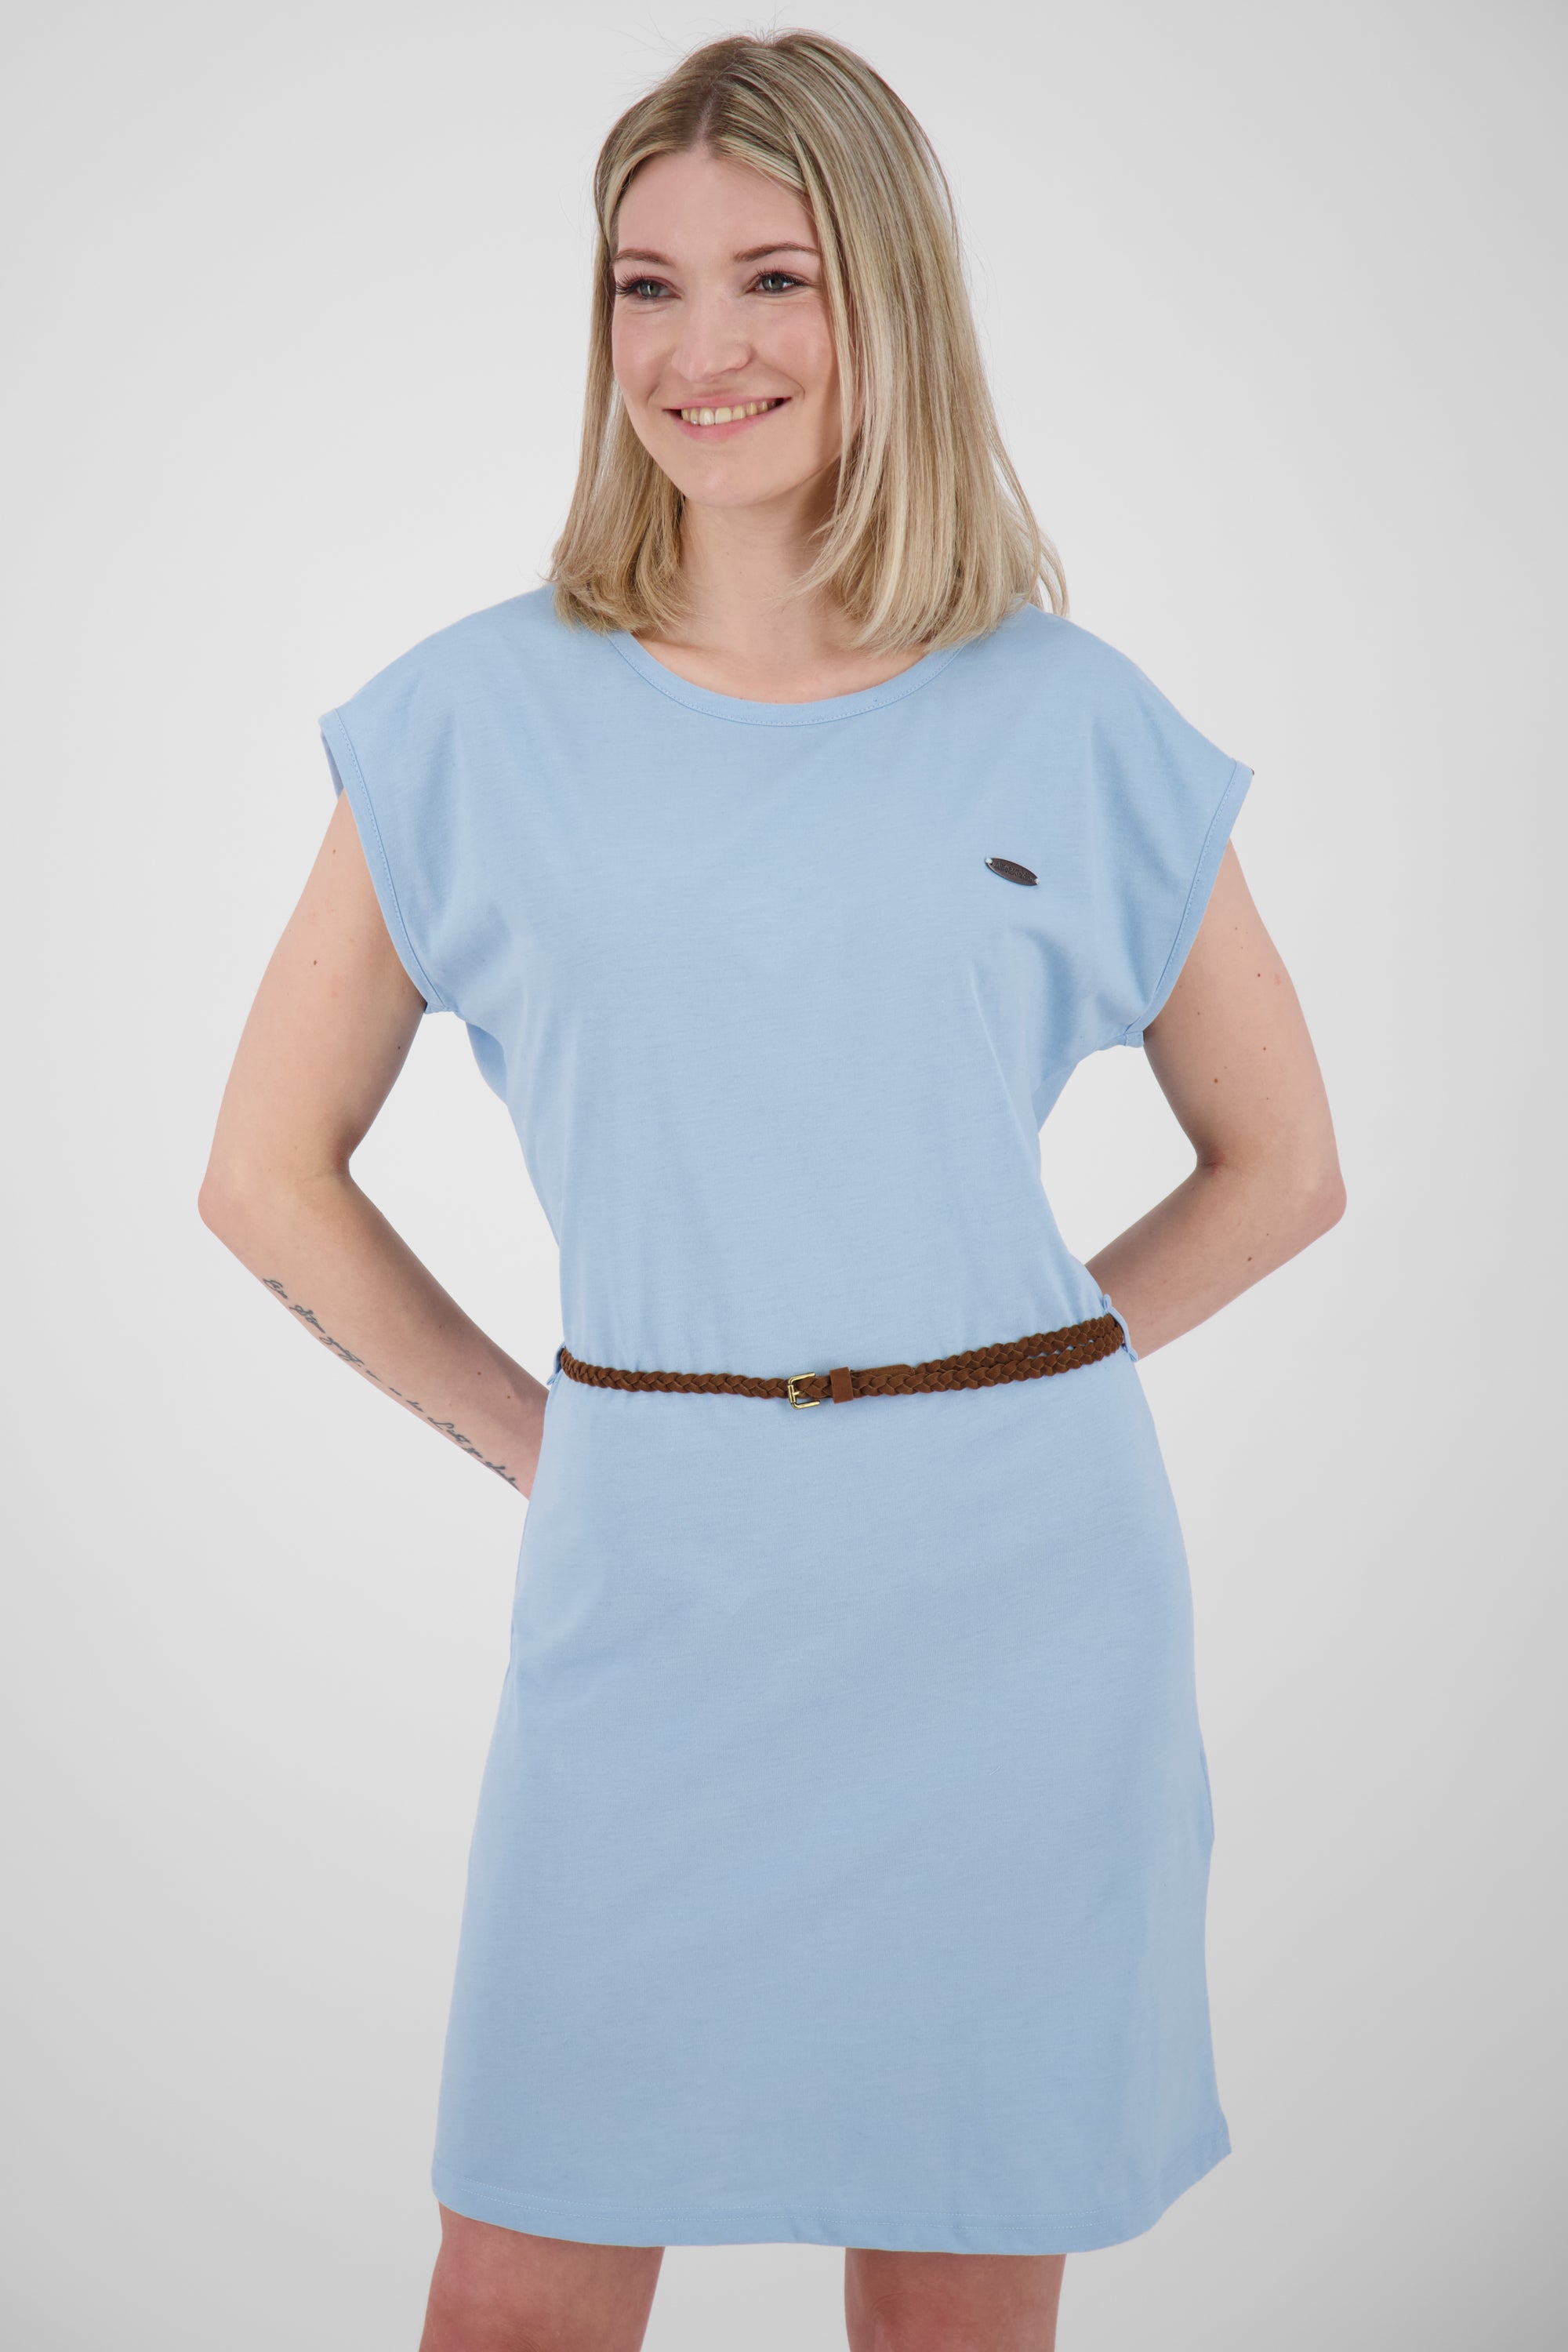 Damen Freizeitkleid ElliAK A - Weiche Jerseyqualität mit figurbetonter Passform Blau